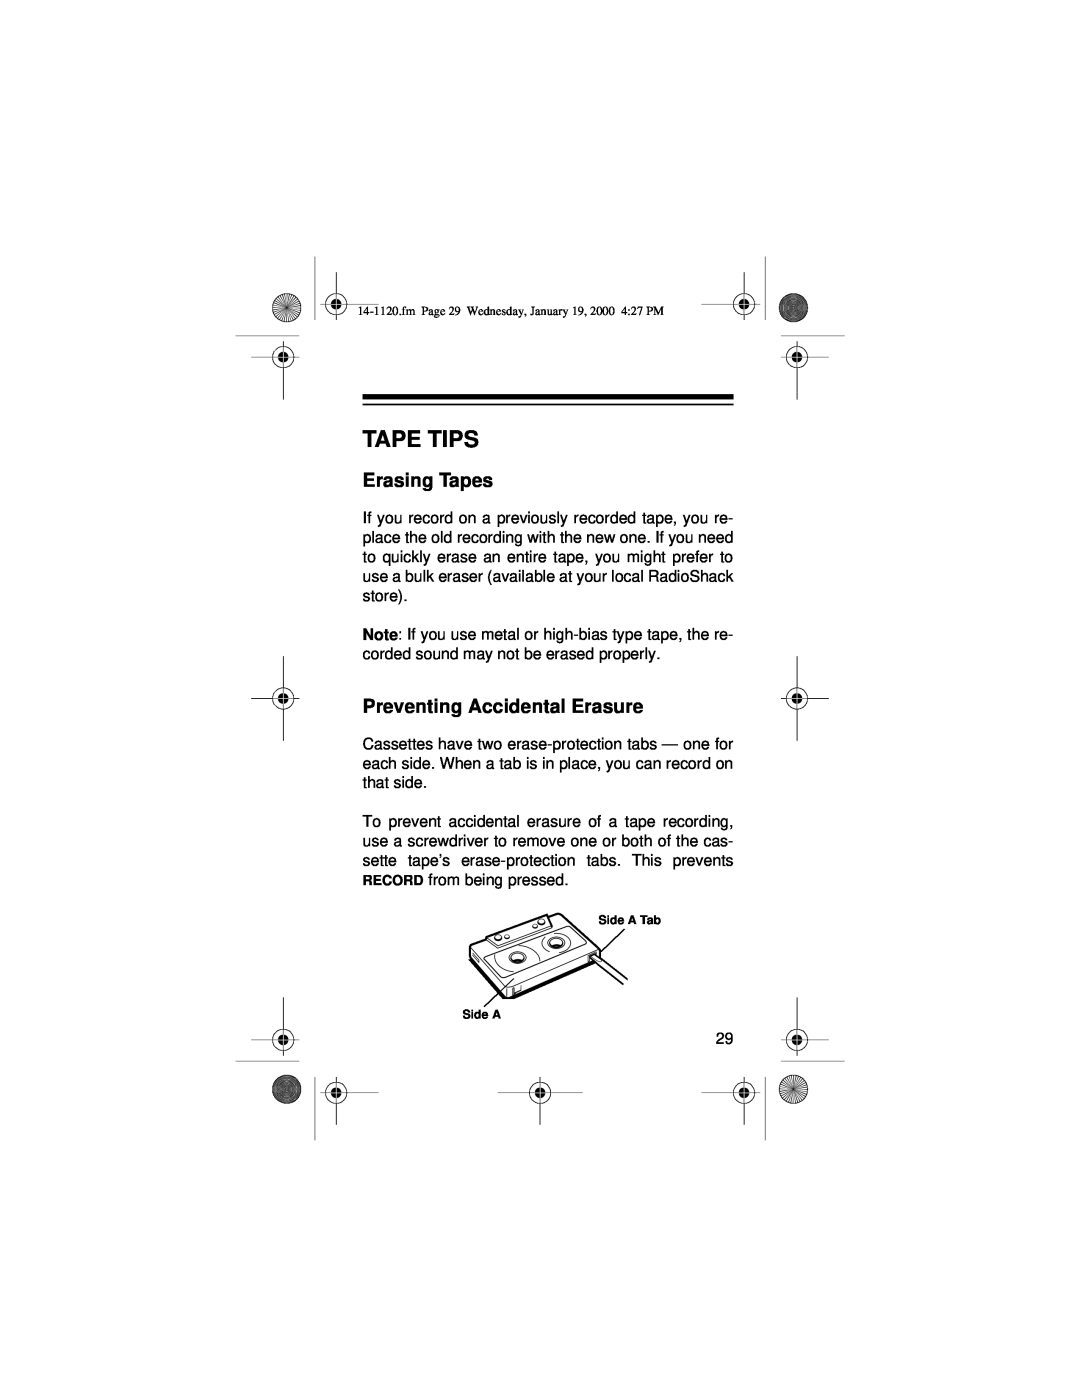 Panasonic CTR-114 owner manual Tape Tips, Erasing Tapes, Preventing Accidental Erasure 